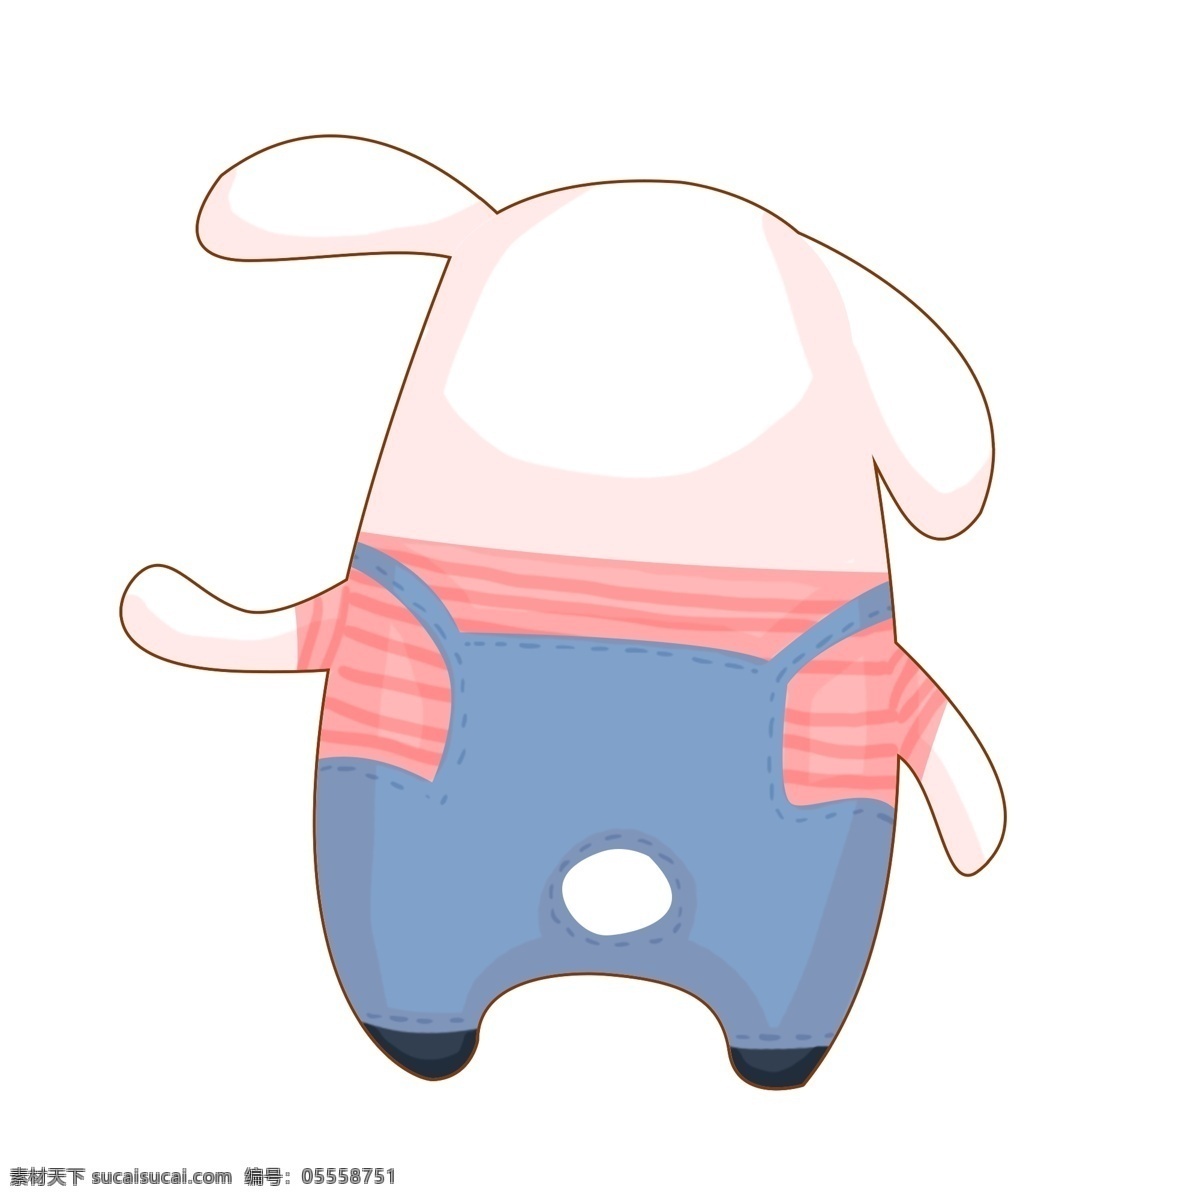 兔子 背带裤 背影 手绘 插画 萌宠 宠物 动物 小动物 裤子 蓝色 红色 白兔